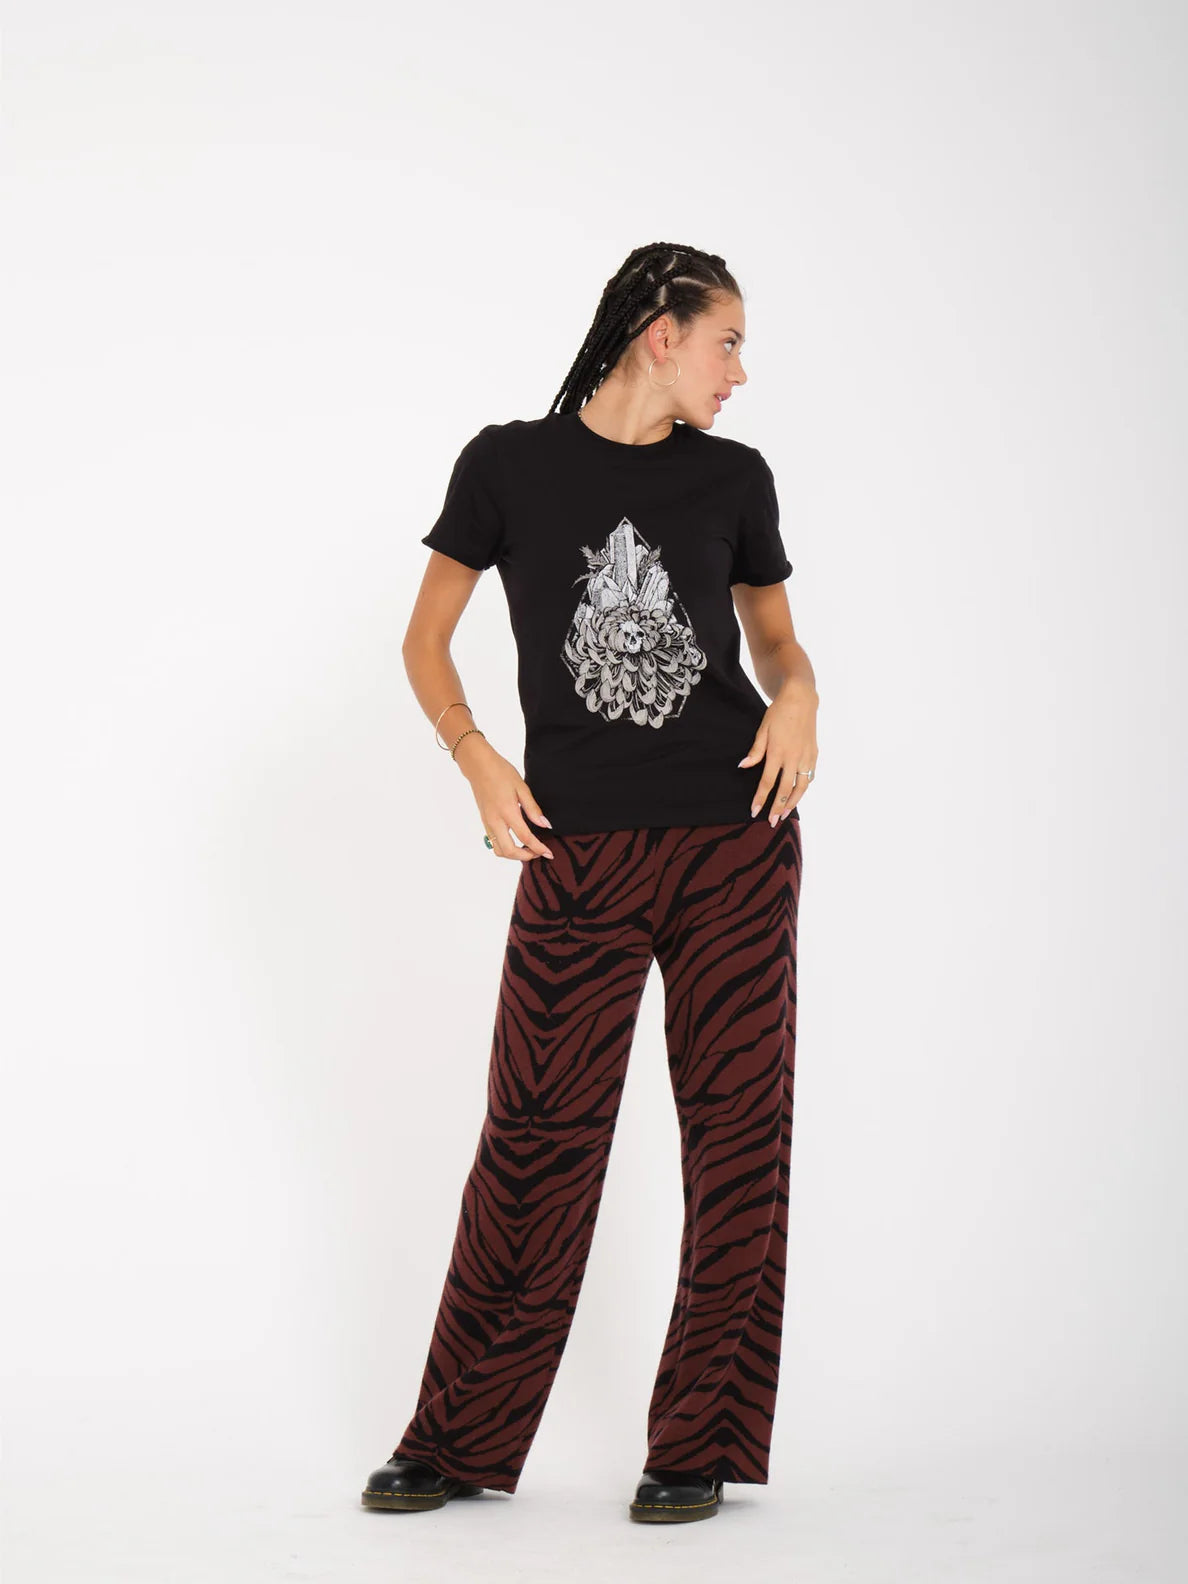 Volcom Radical Daze Mädchen T-Shirt – Schwarz | Meistverkaufte Produkte | Neue Produkte | Neueste Produkte | surfdevils.com